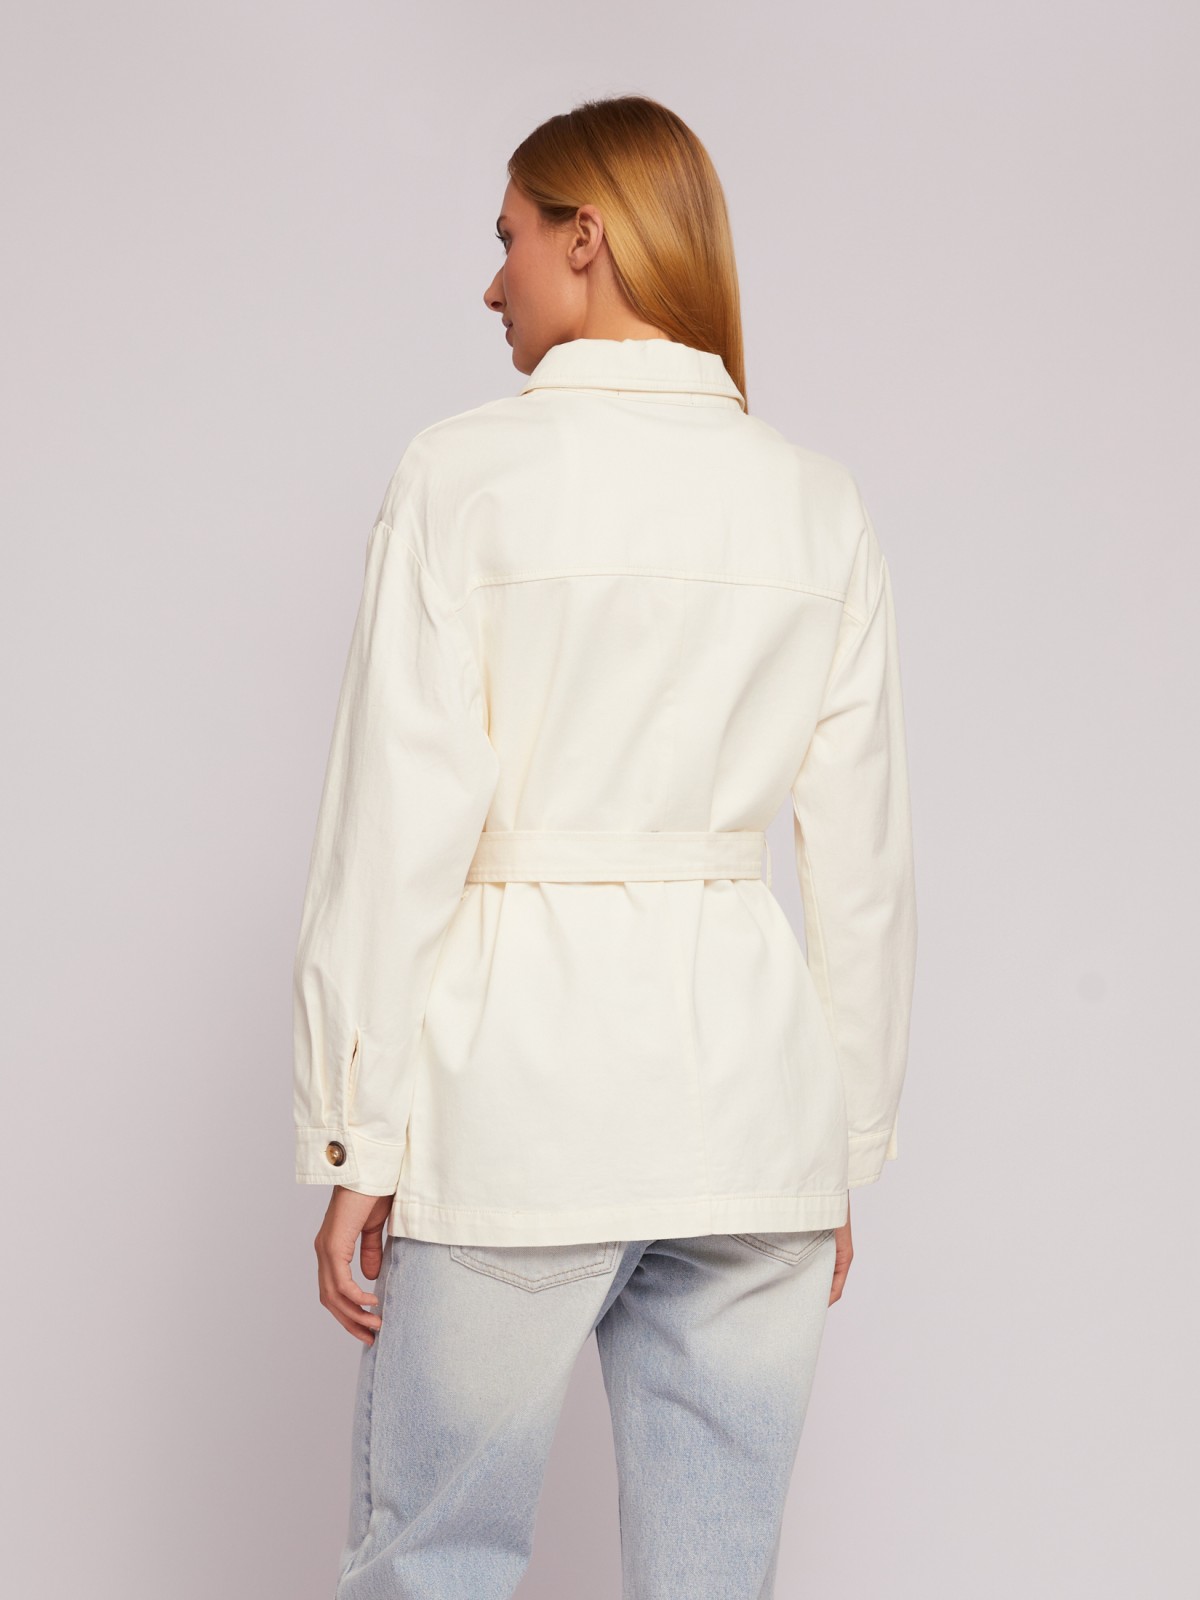 Куртка-рубашка из хлопка с поясом zolla 02421547Z093, цвет молоко, размер S - фото 6